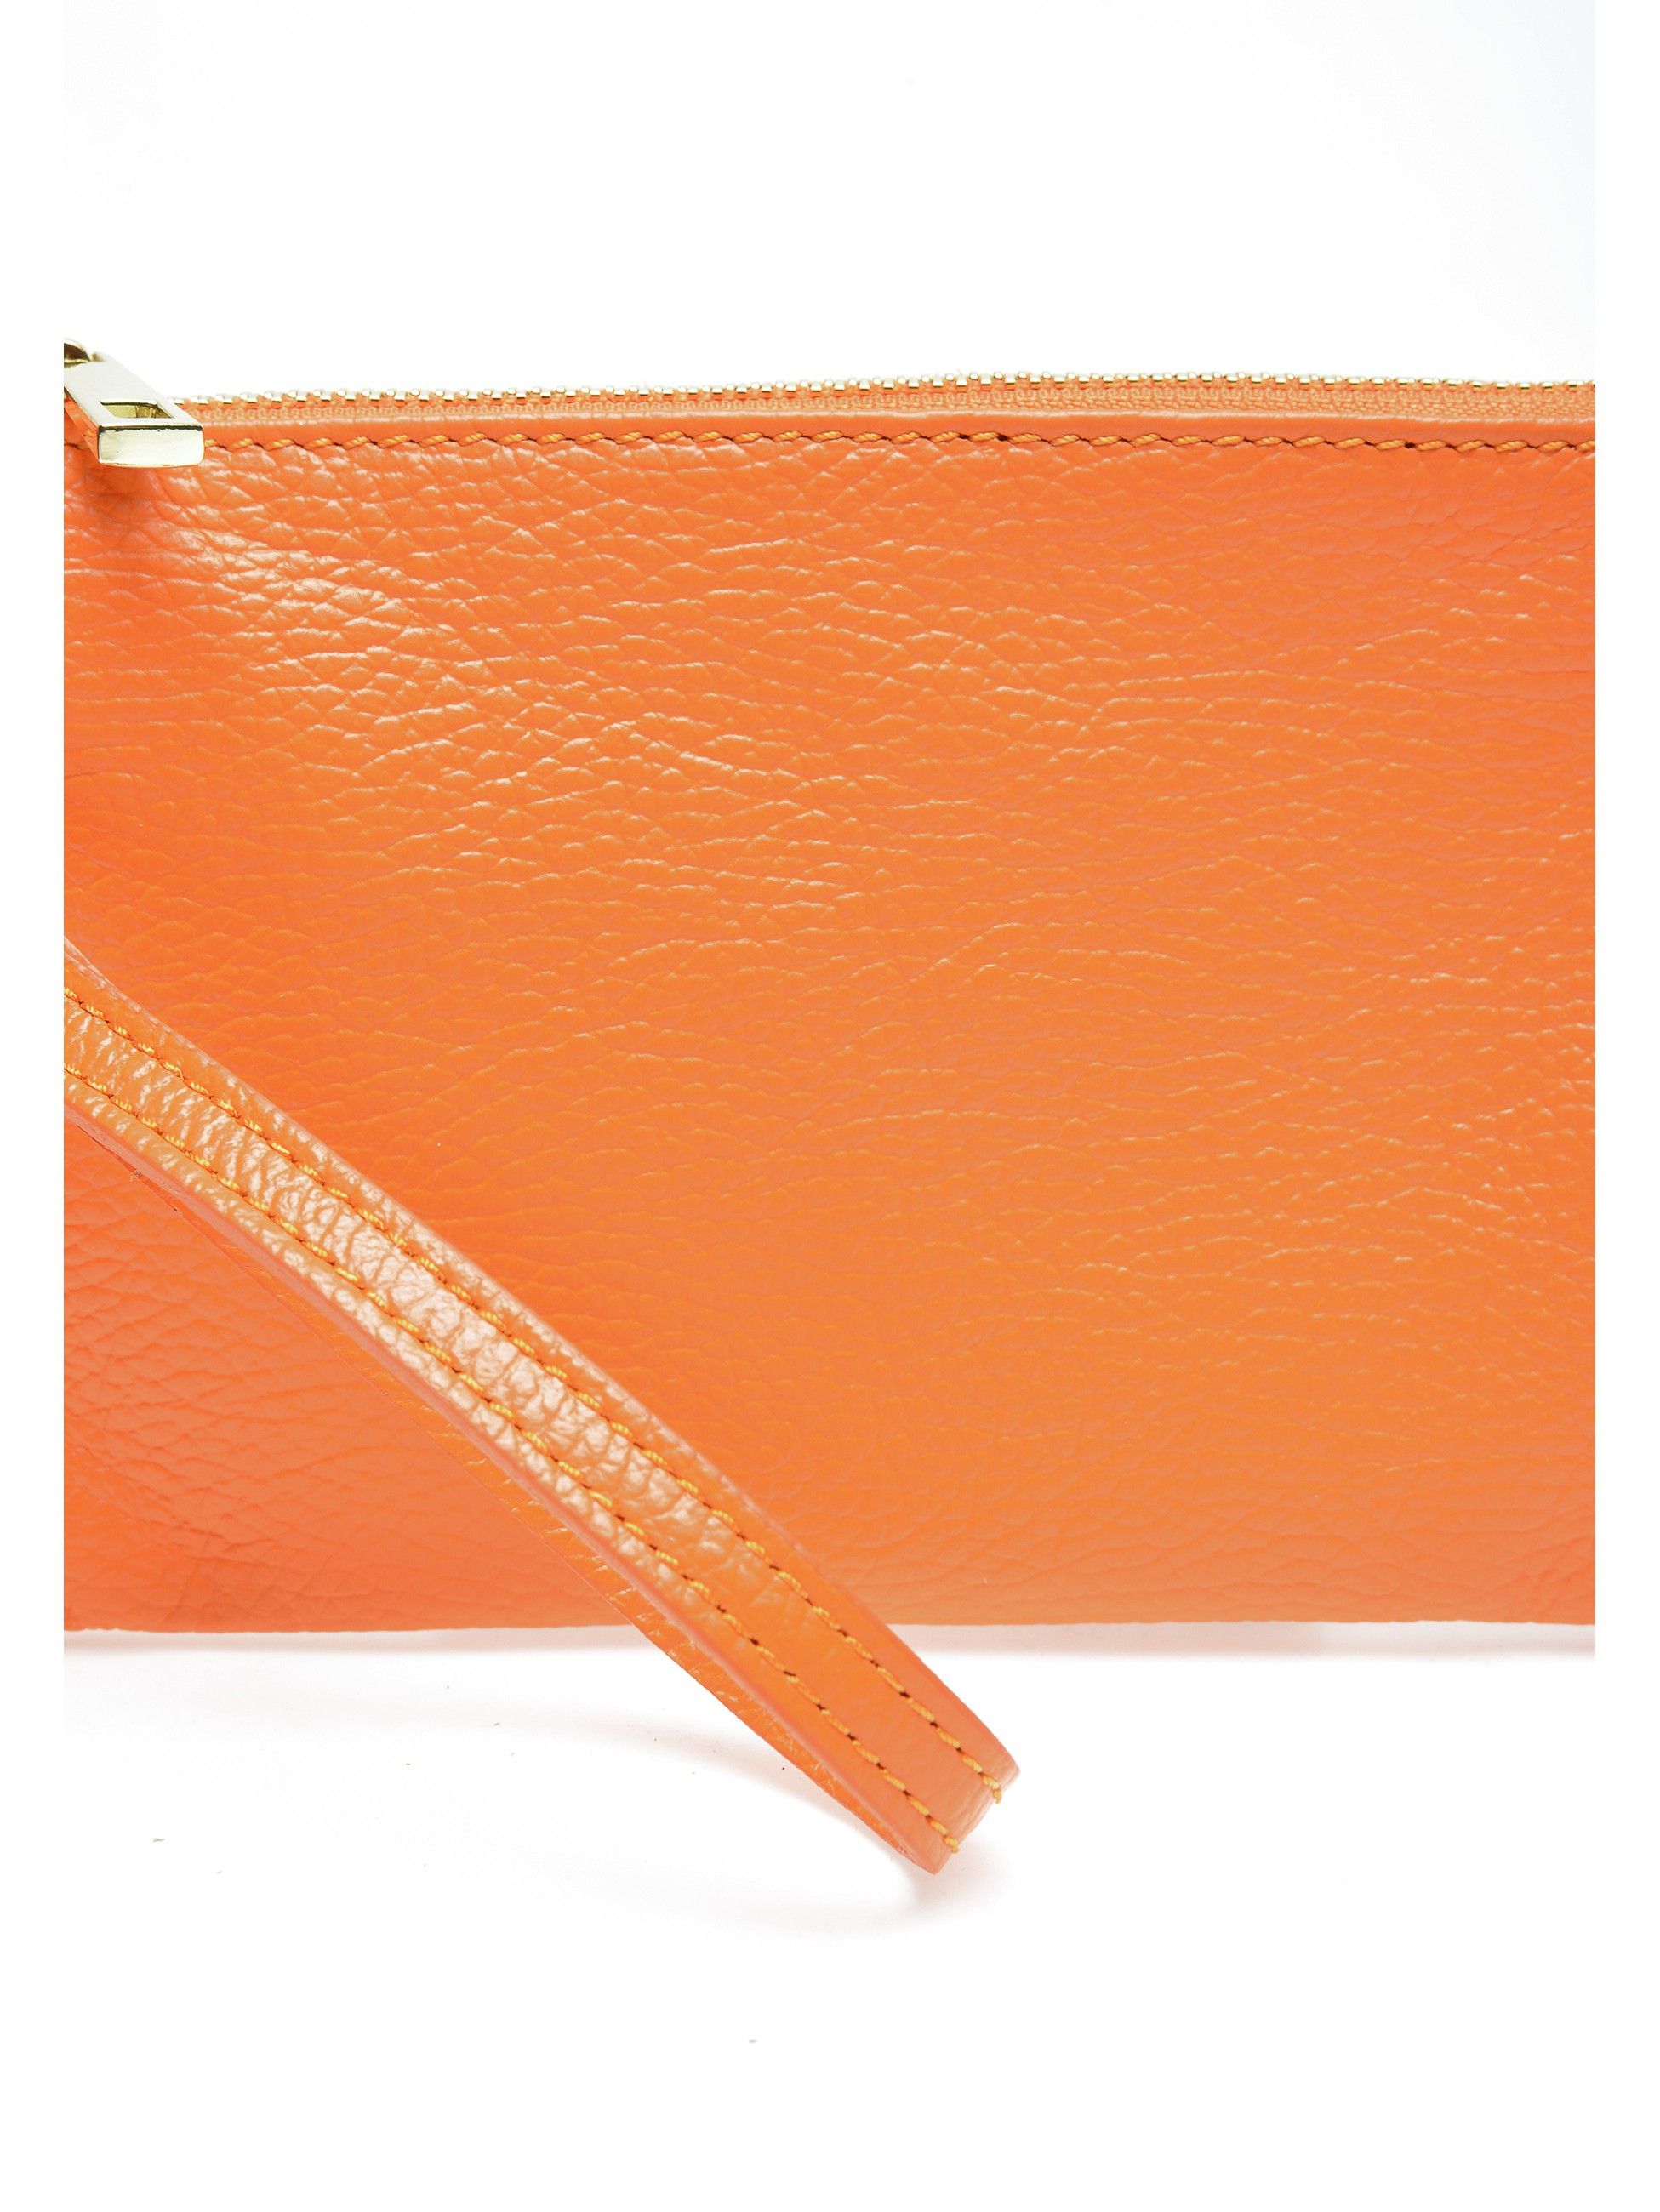 Clutch Bag
100% cow leather
Top zip closure
Dimensions (L): 13x22.5x / cm
Handle: 27 cm
Shoulder strap: /